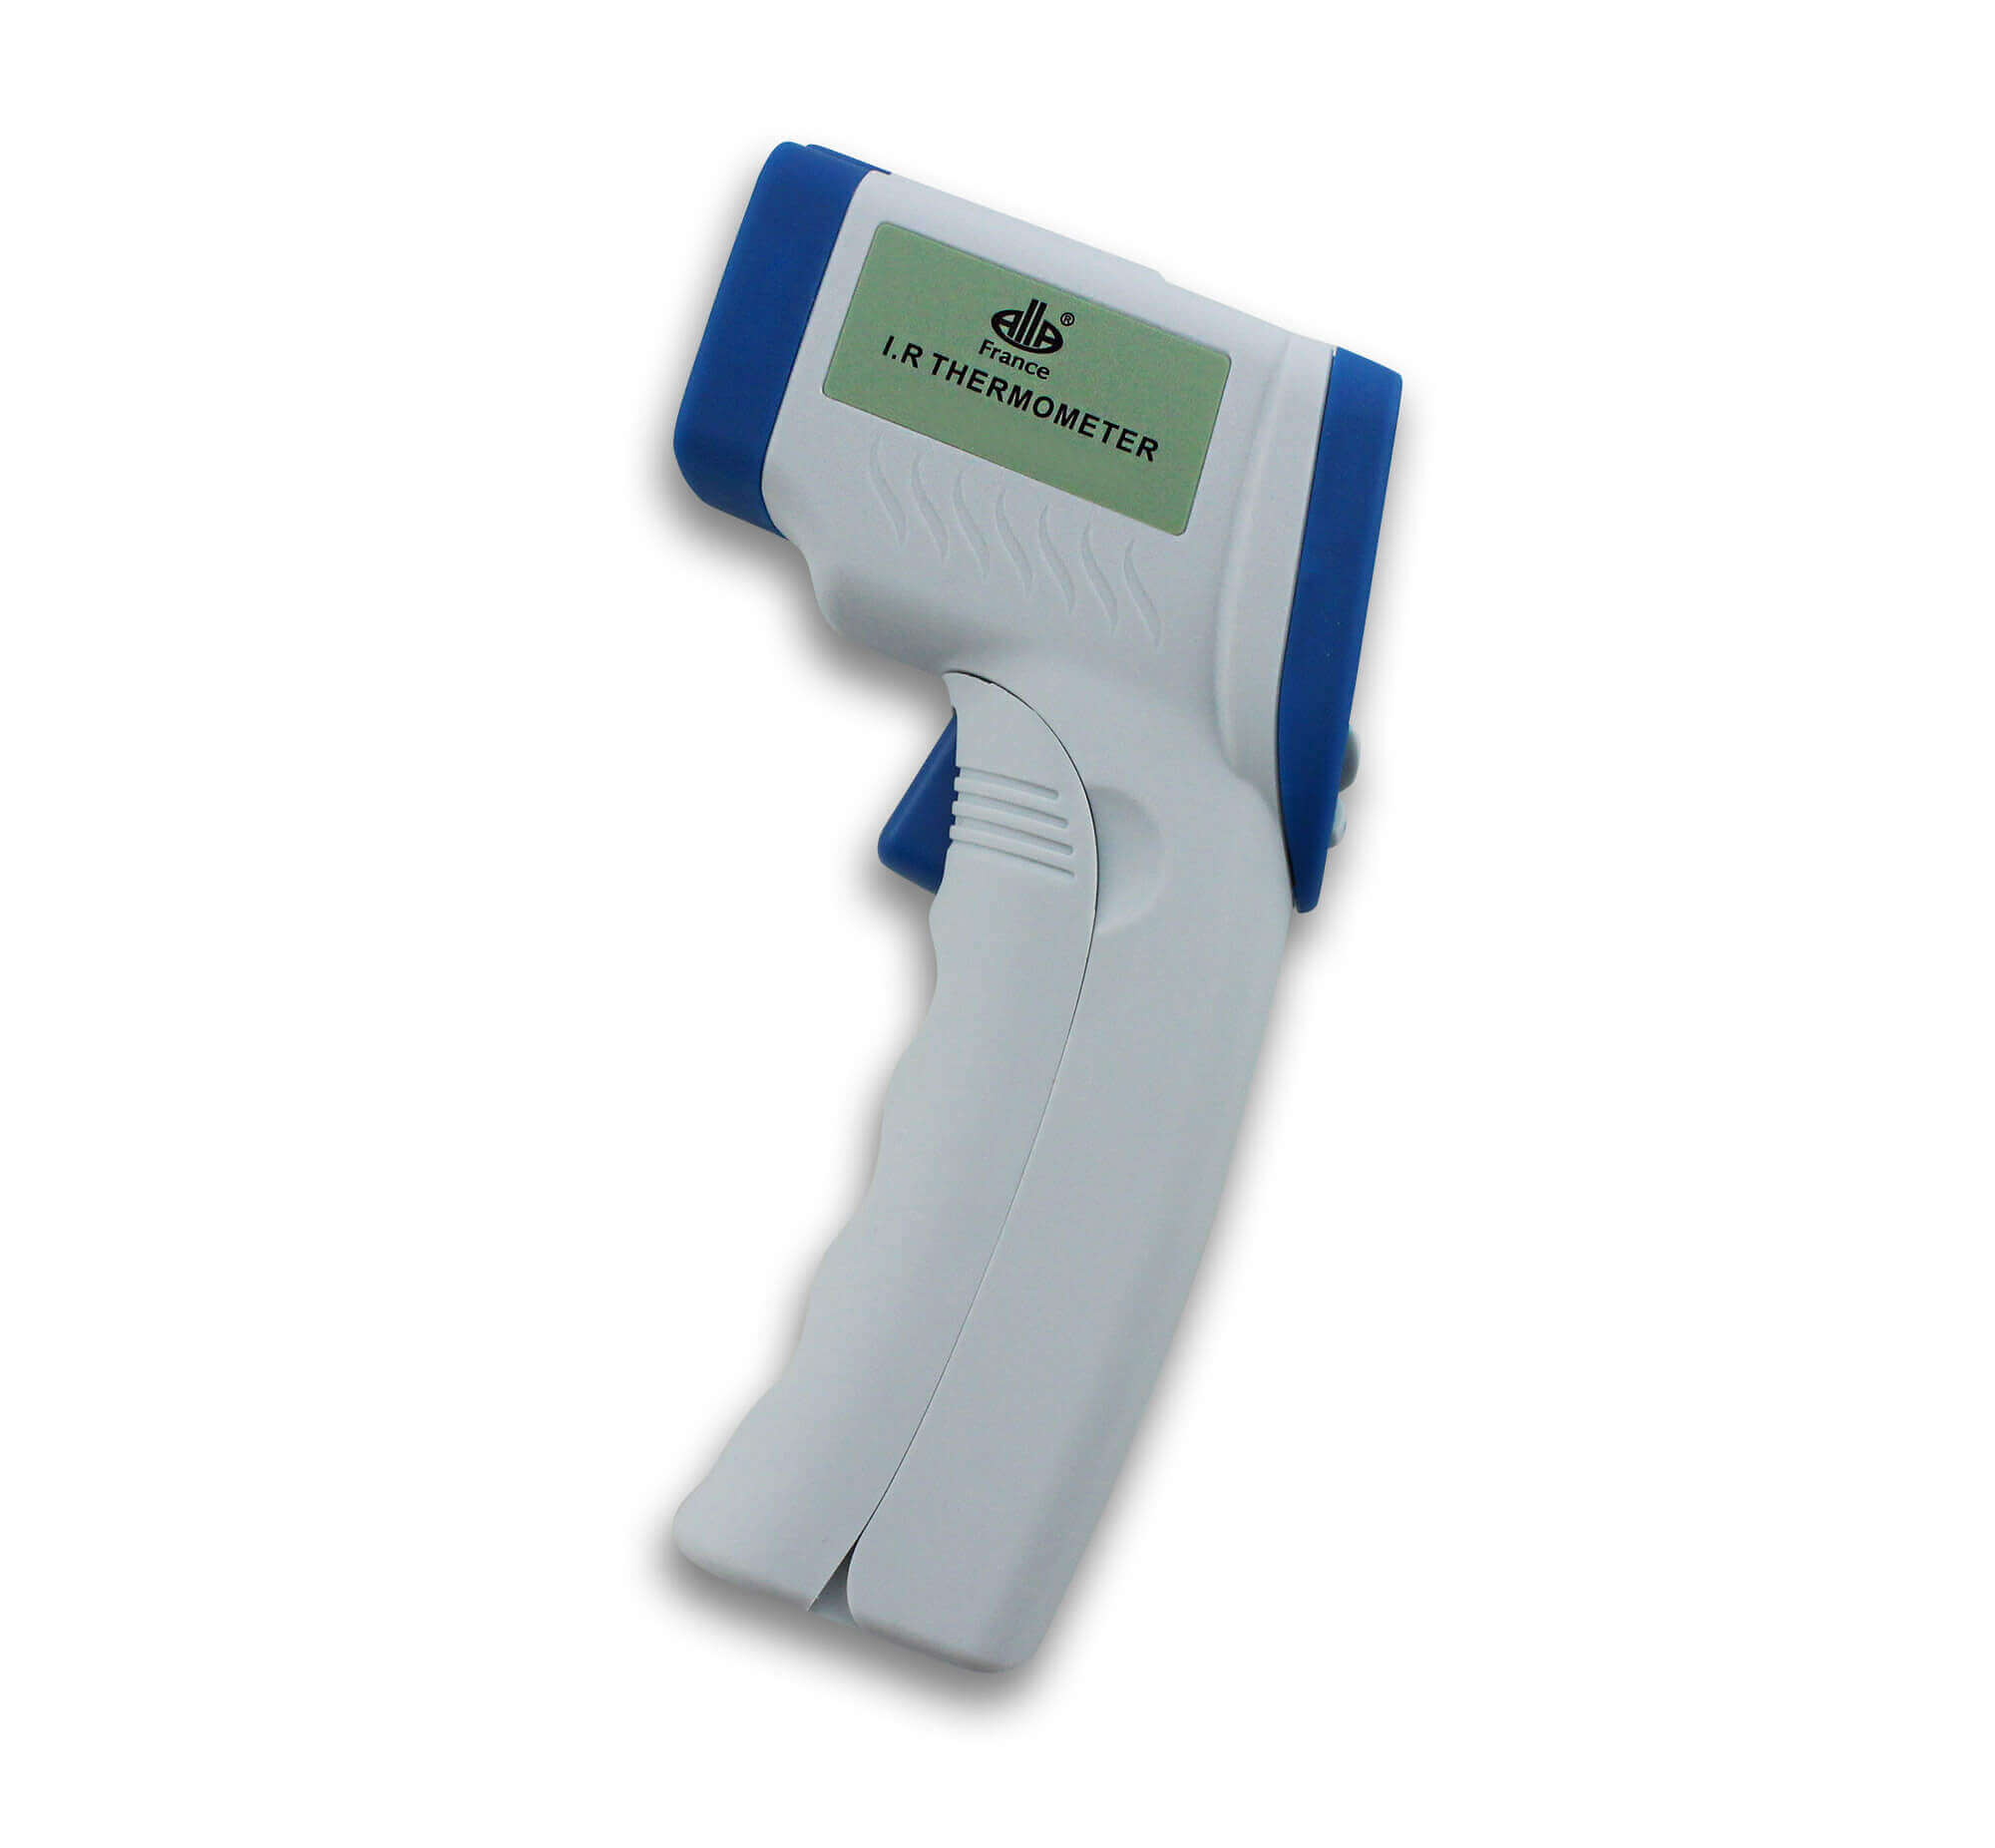 Thermomètre infrarouge avec pointeur laser 49506170